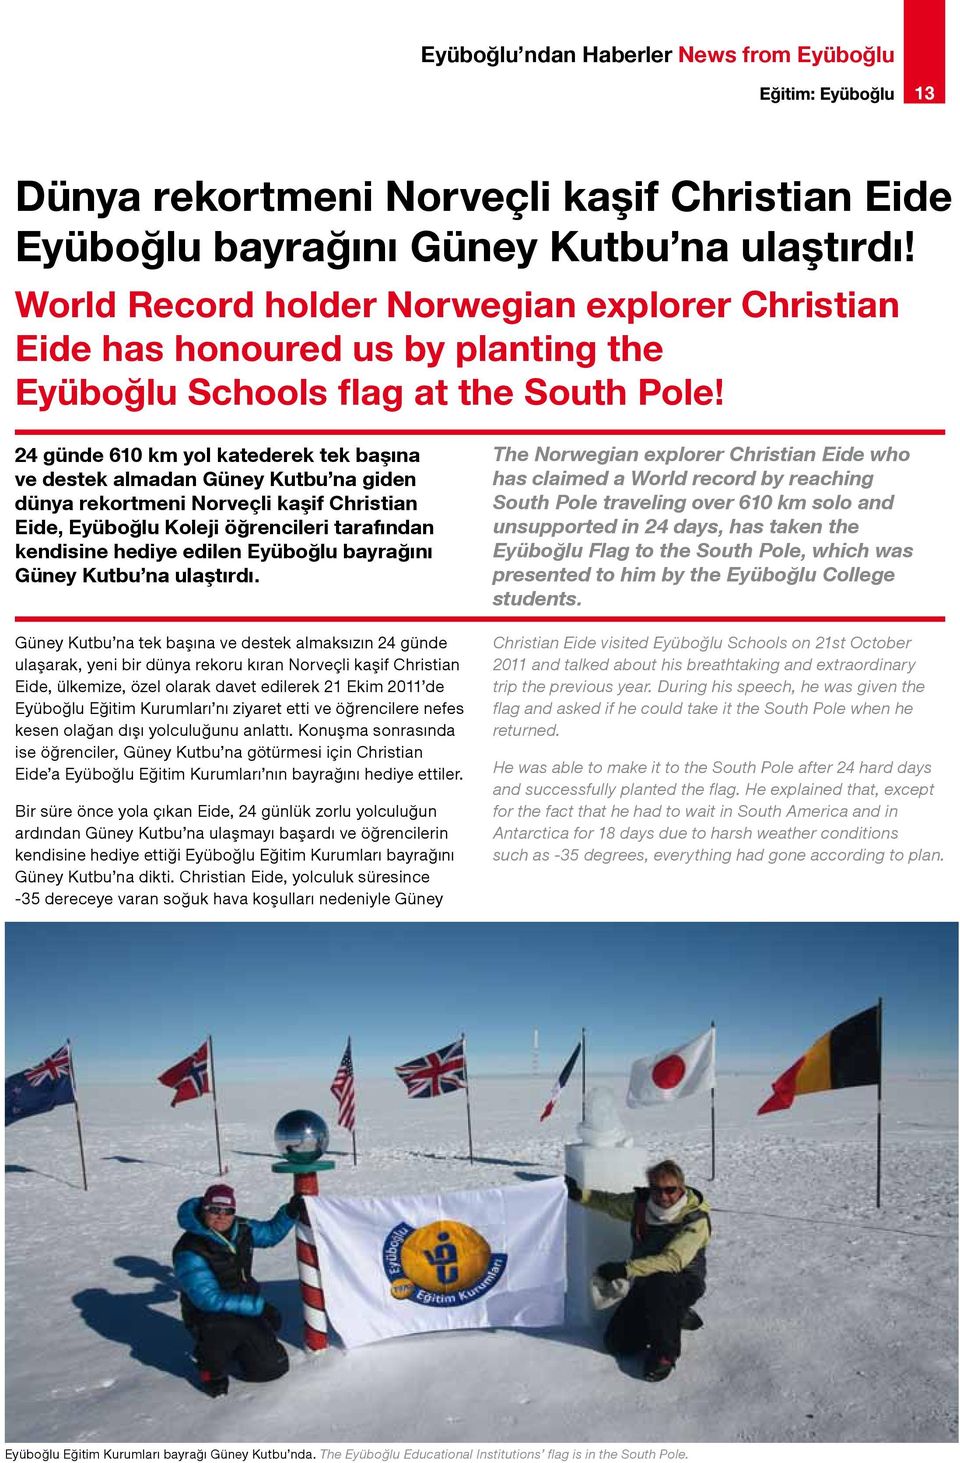 24 günde 610 km yol katederek tek başına ve destek almadan Güney Kutbu na giden dünya rekortmeni Norveçli kaşif Christian Eide, Eyüboğlu Koleji öğrencileri tarafından kendisine hediye edilen Eyüboğlu